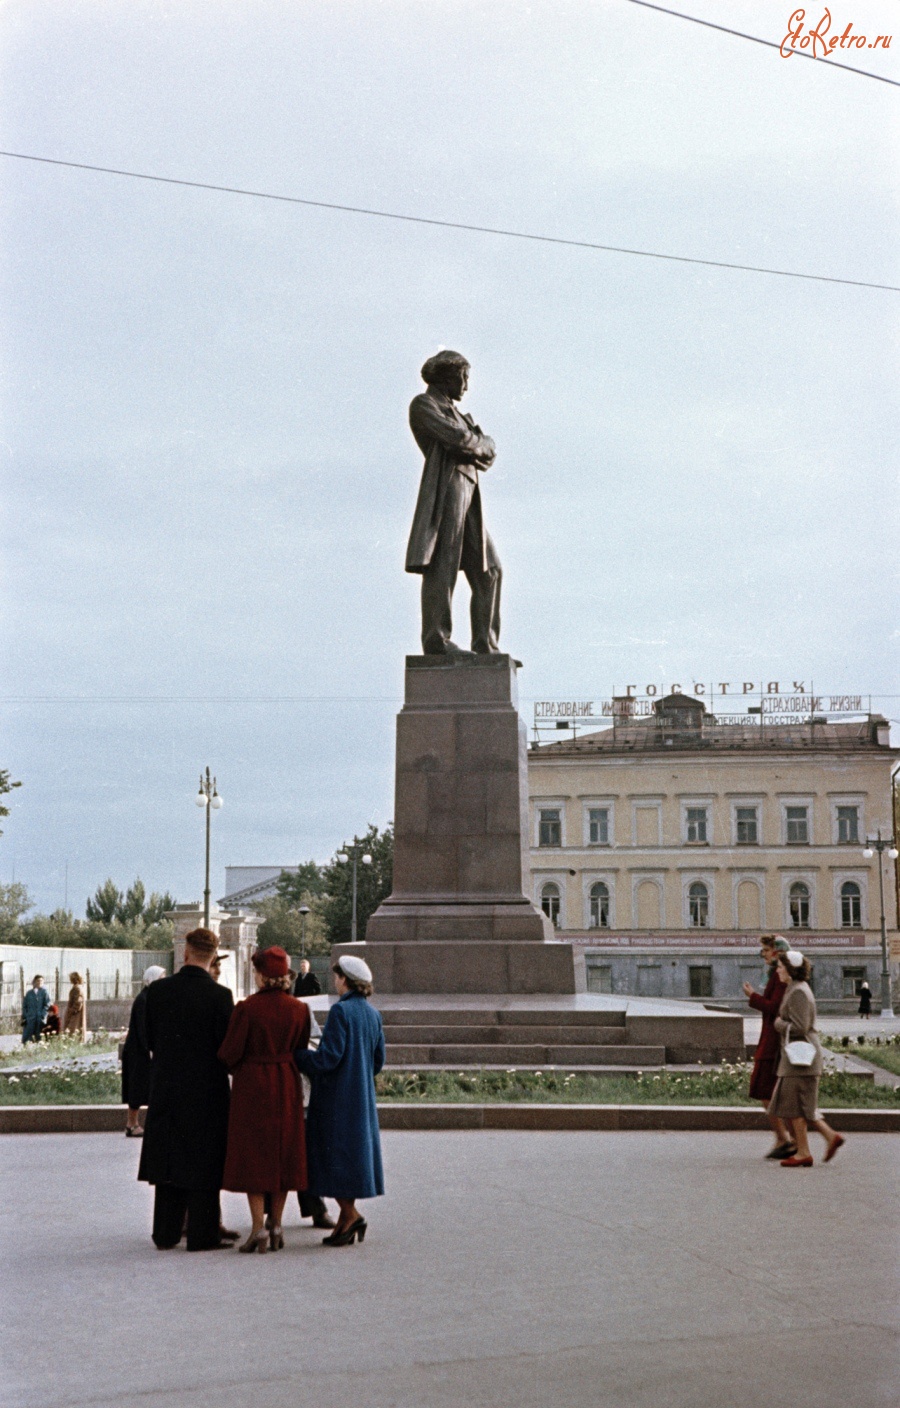 Саратов - Памятник Чернышевскому в 1957 году в цвете